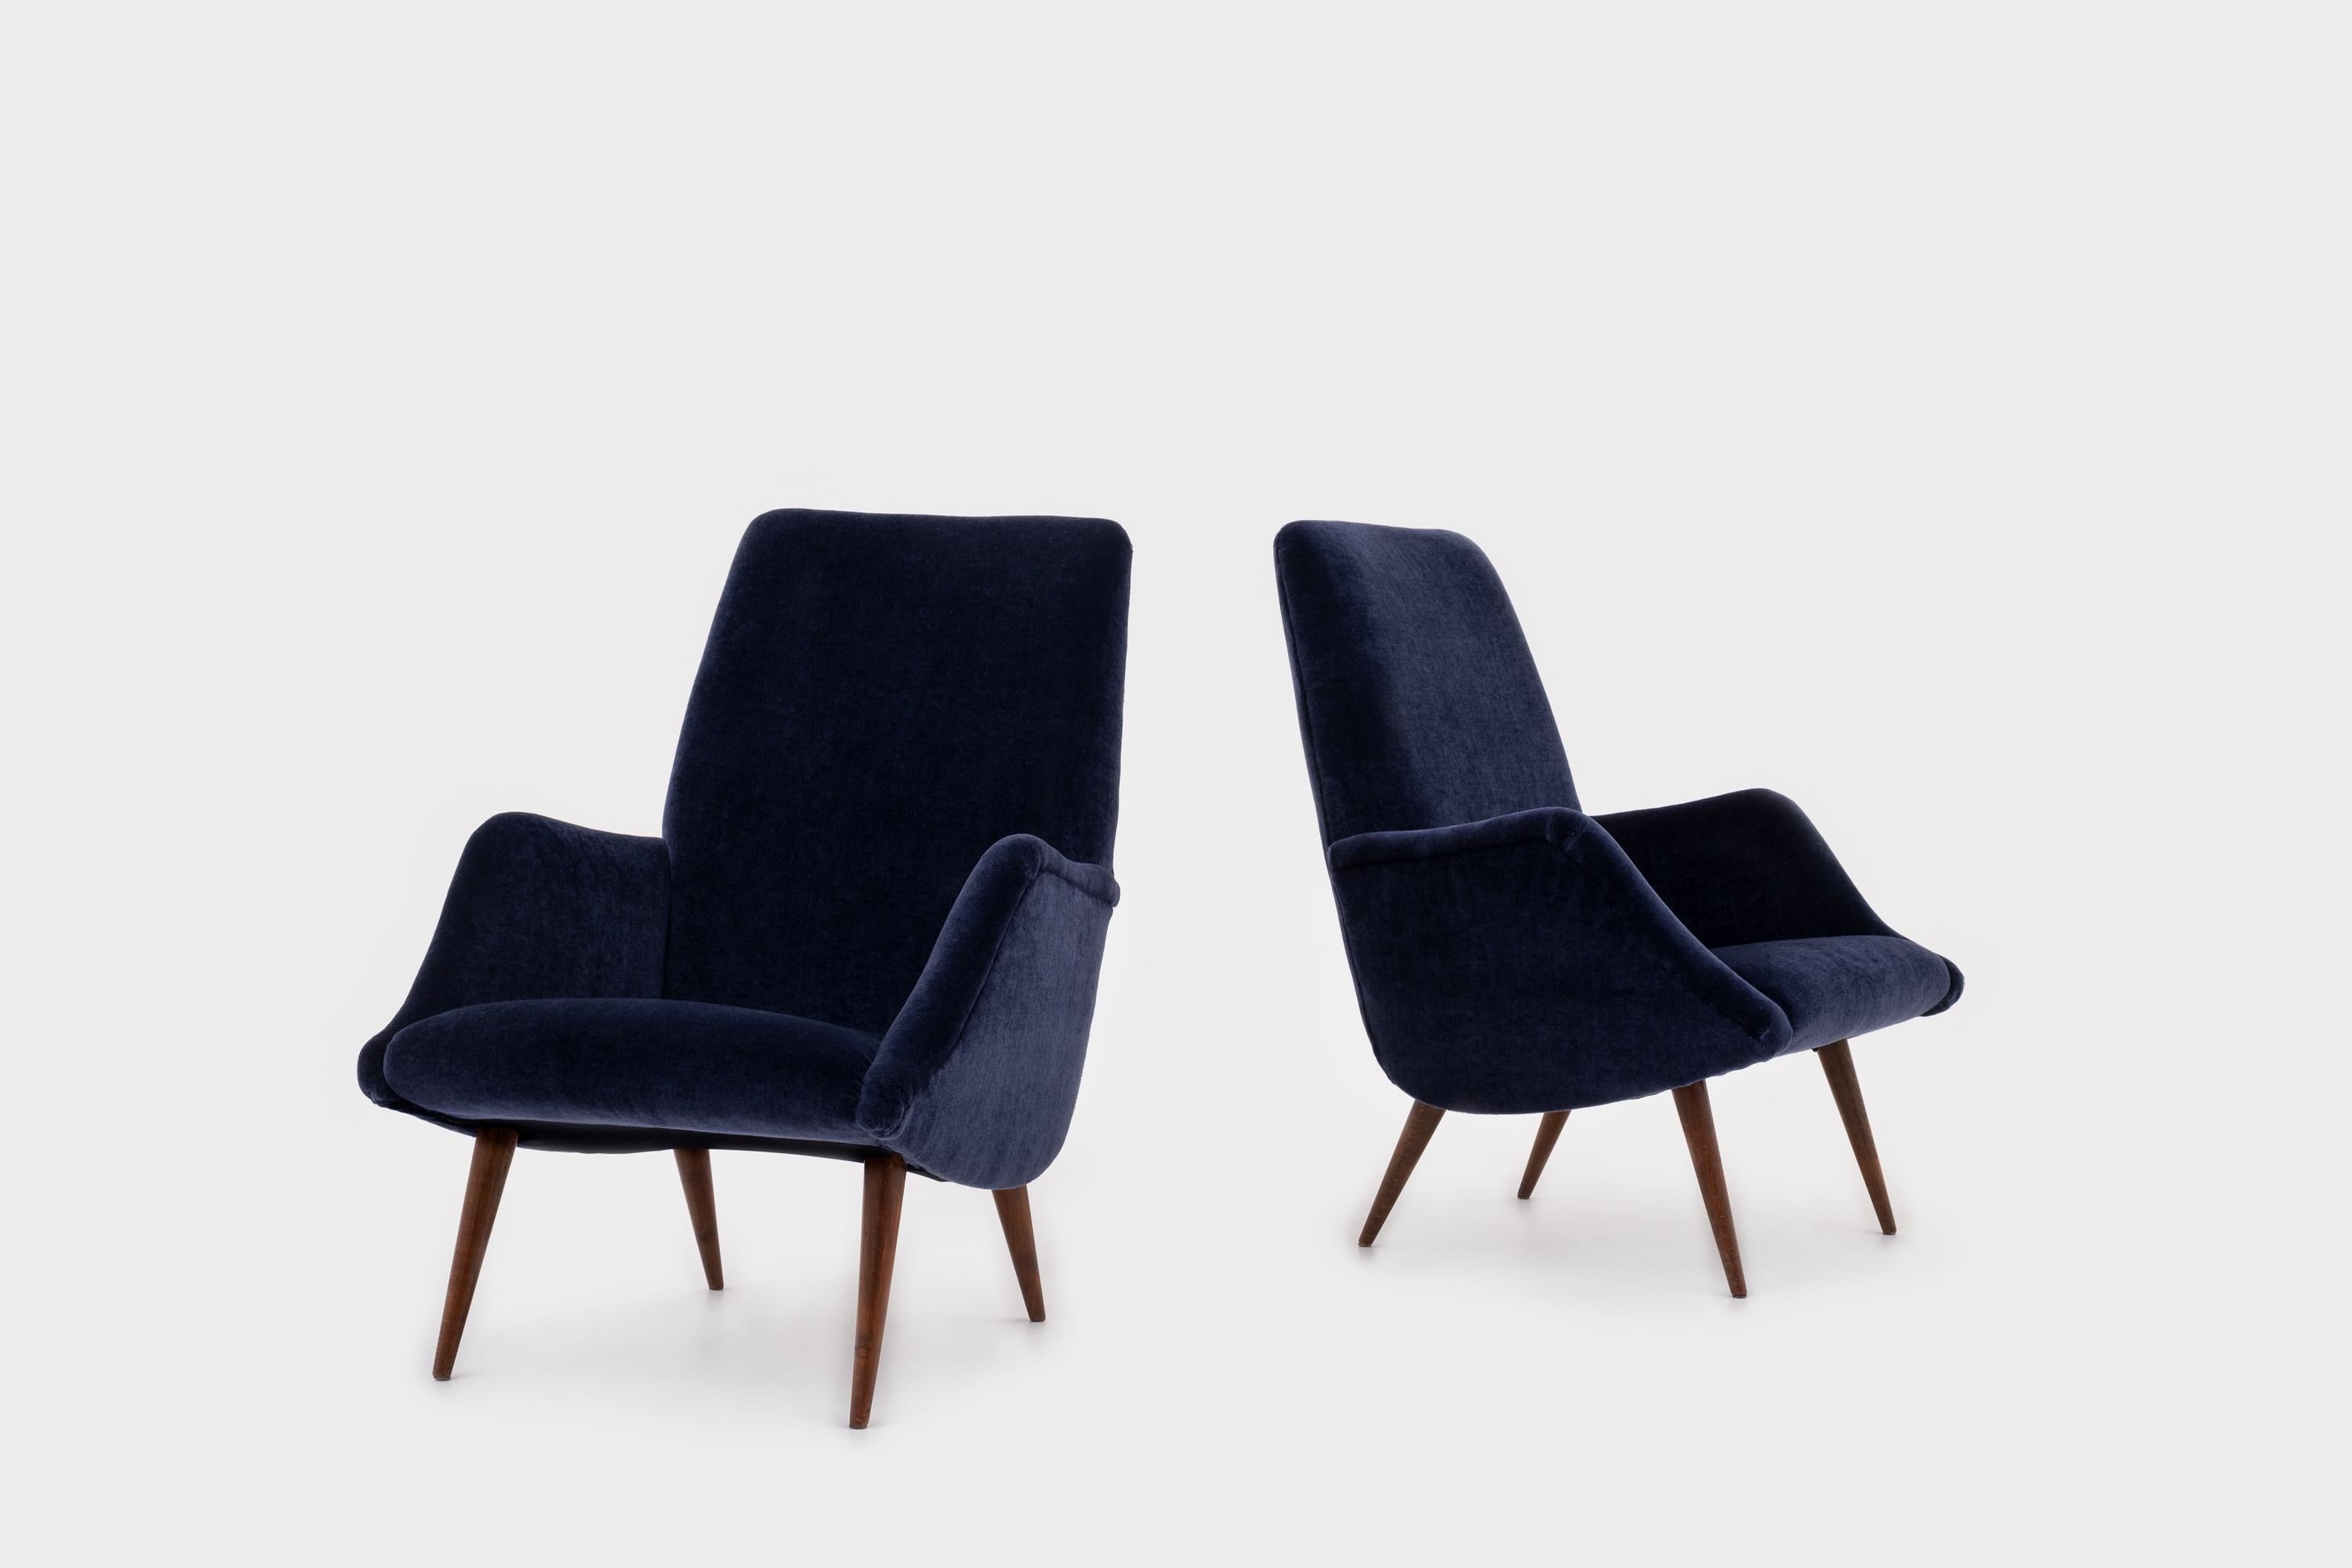 Schönes Paar Sessel '806' von Carlo de Carli für Cassina, Italien, 1955. Elegante geschwungene Form mit schönen, spitz zulaufenden Beinen aus italienischem Walnussholz. Die Stühle sind komplett überholt und mit einem hochwertigen nachtblauen